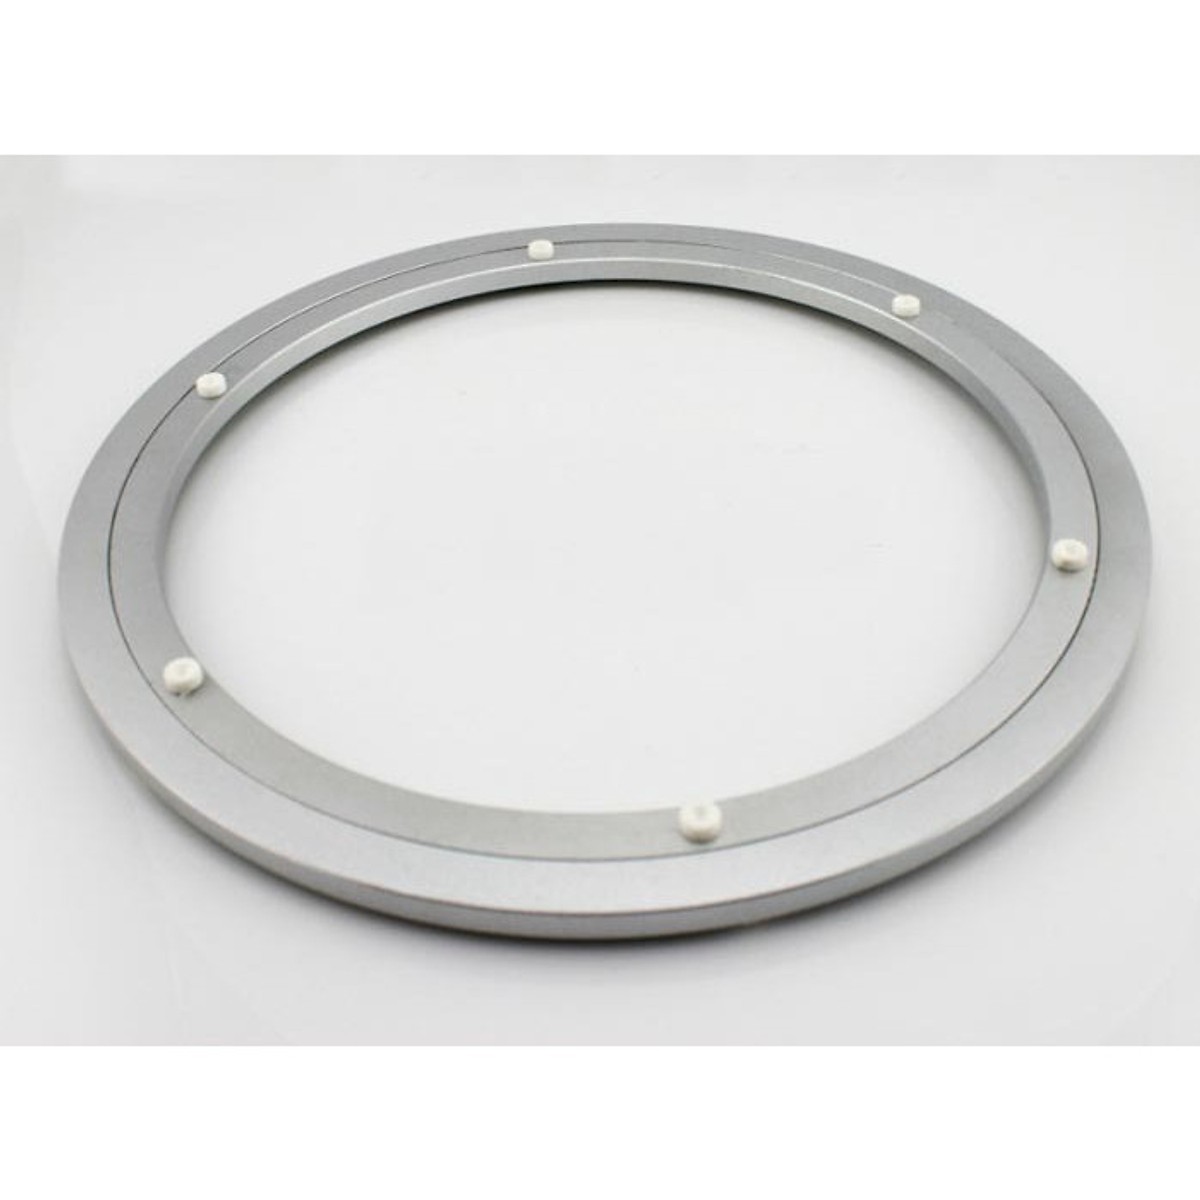 vòng xoay nhôm Ø300mm được dùng làm đế mâm xoay bàn ăn tròn trong nhà hàng tiệc cưới, là phụ kiện sản xuất trong ngành nội thất, dùng để xoay tròn các vật dụng, dùng để trang trí chế tác xoay tròn